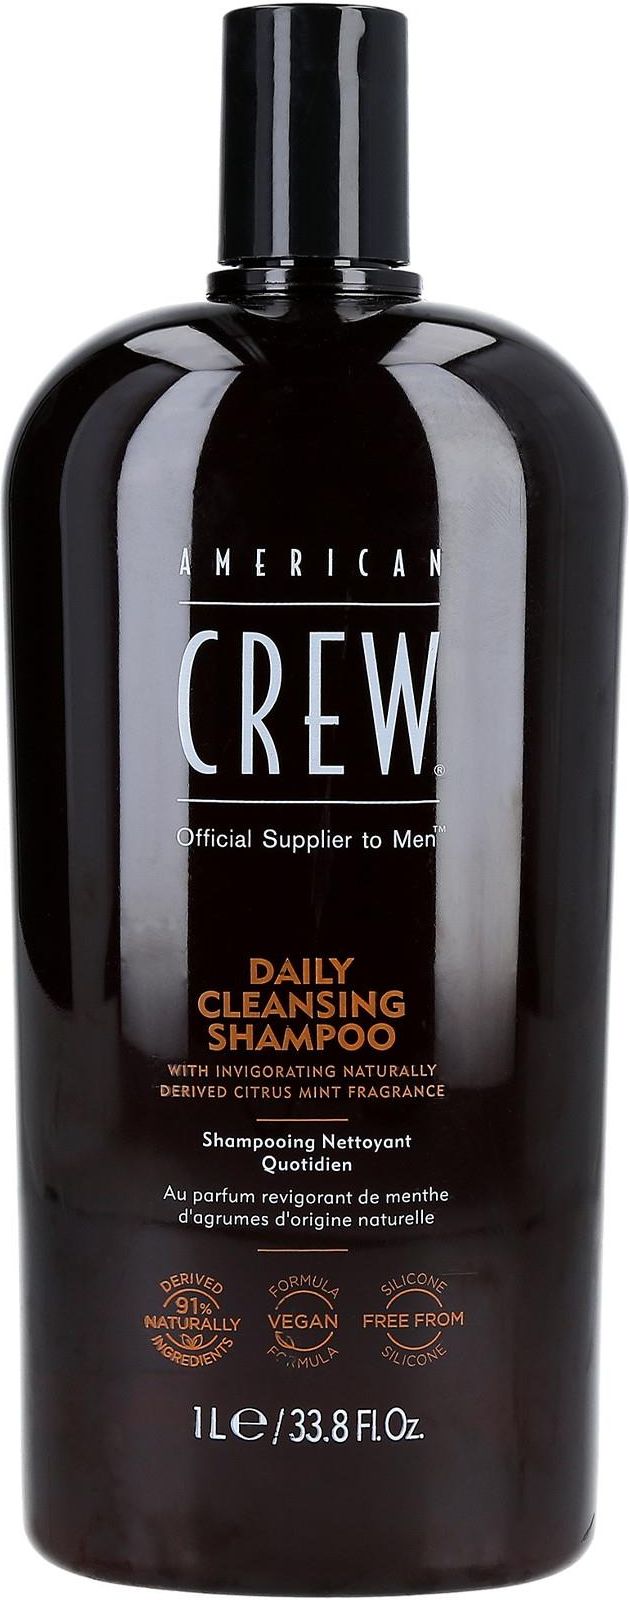 american crew szampon gdzie kupić